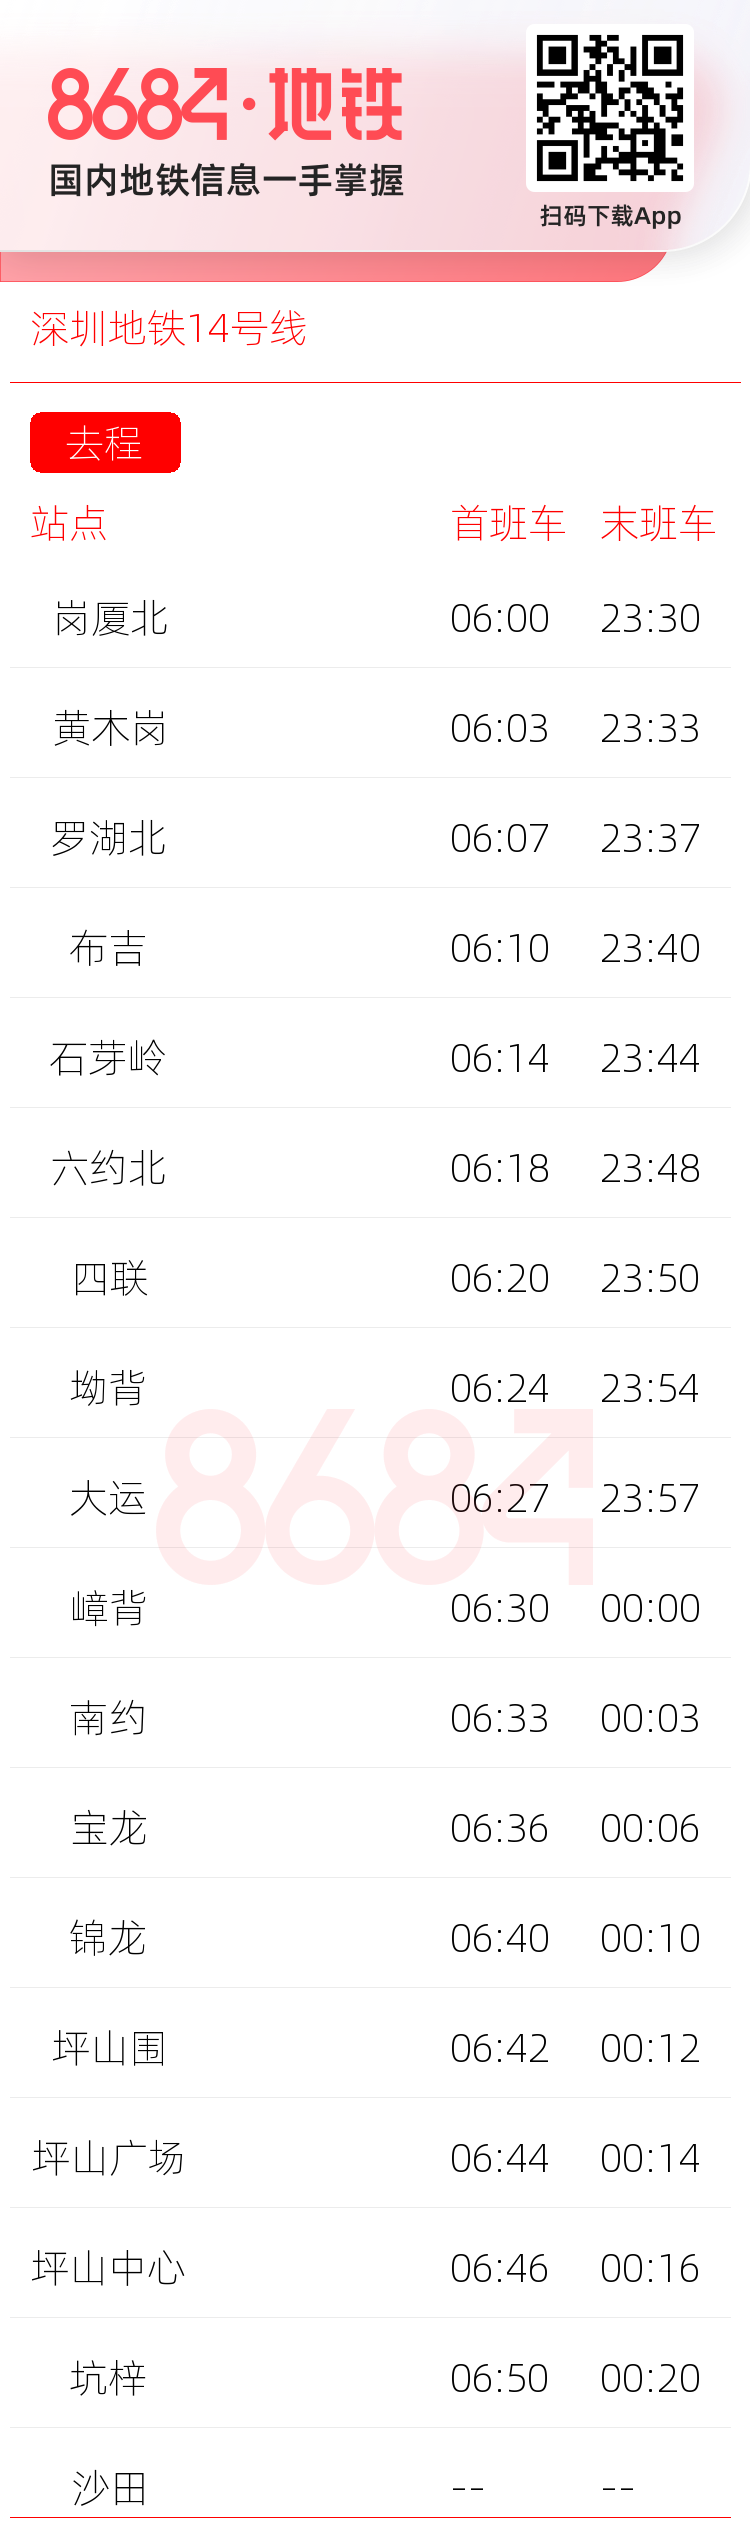 深圳地铁14号线运营时间表